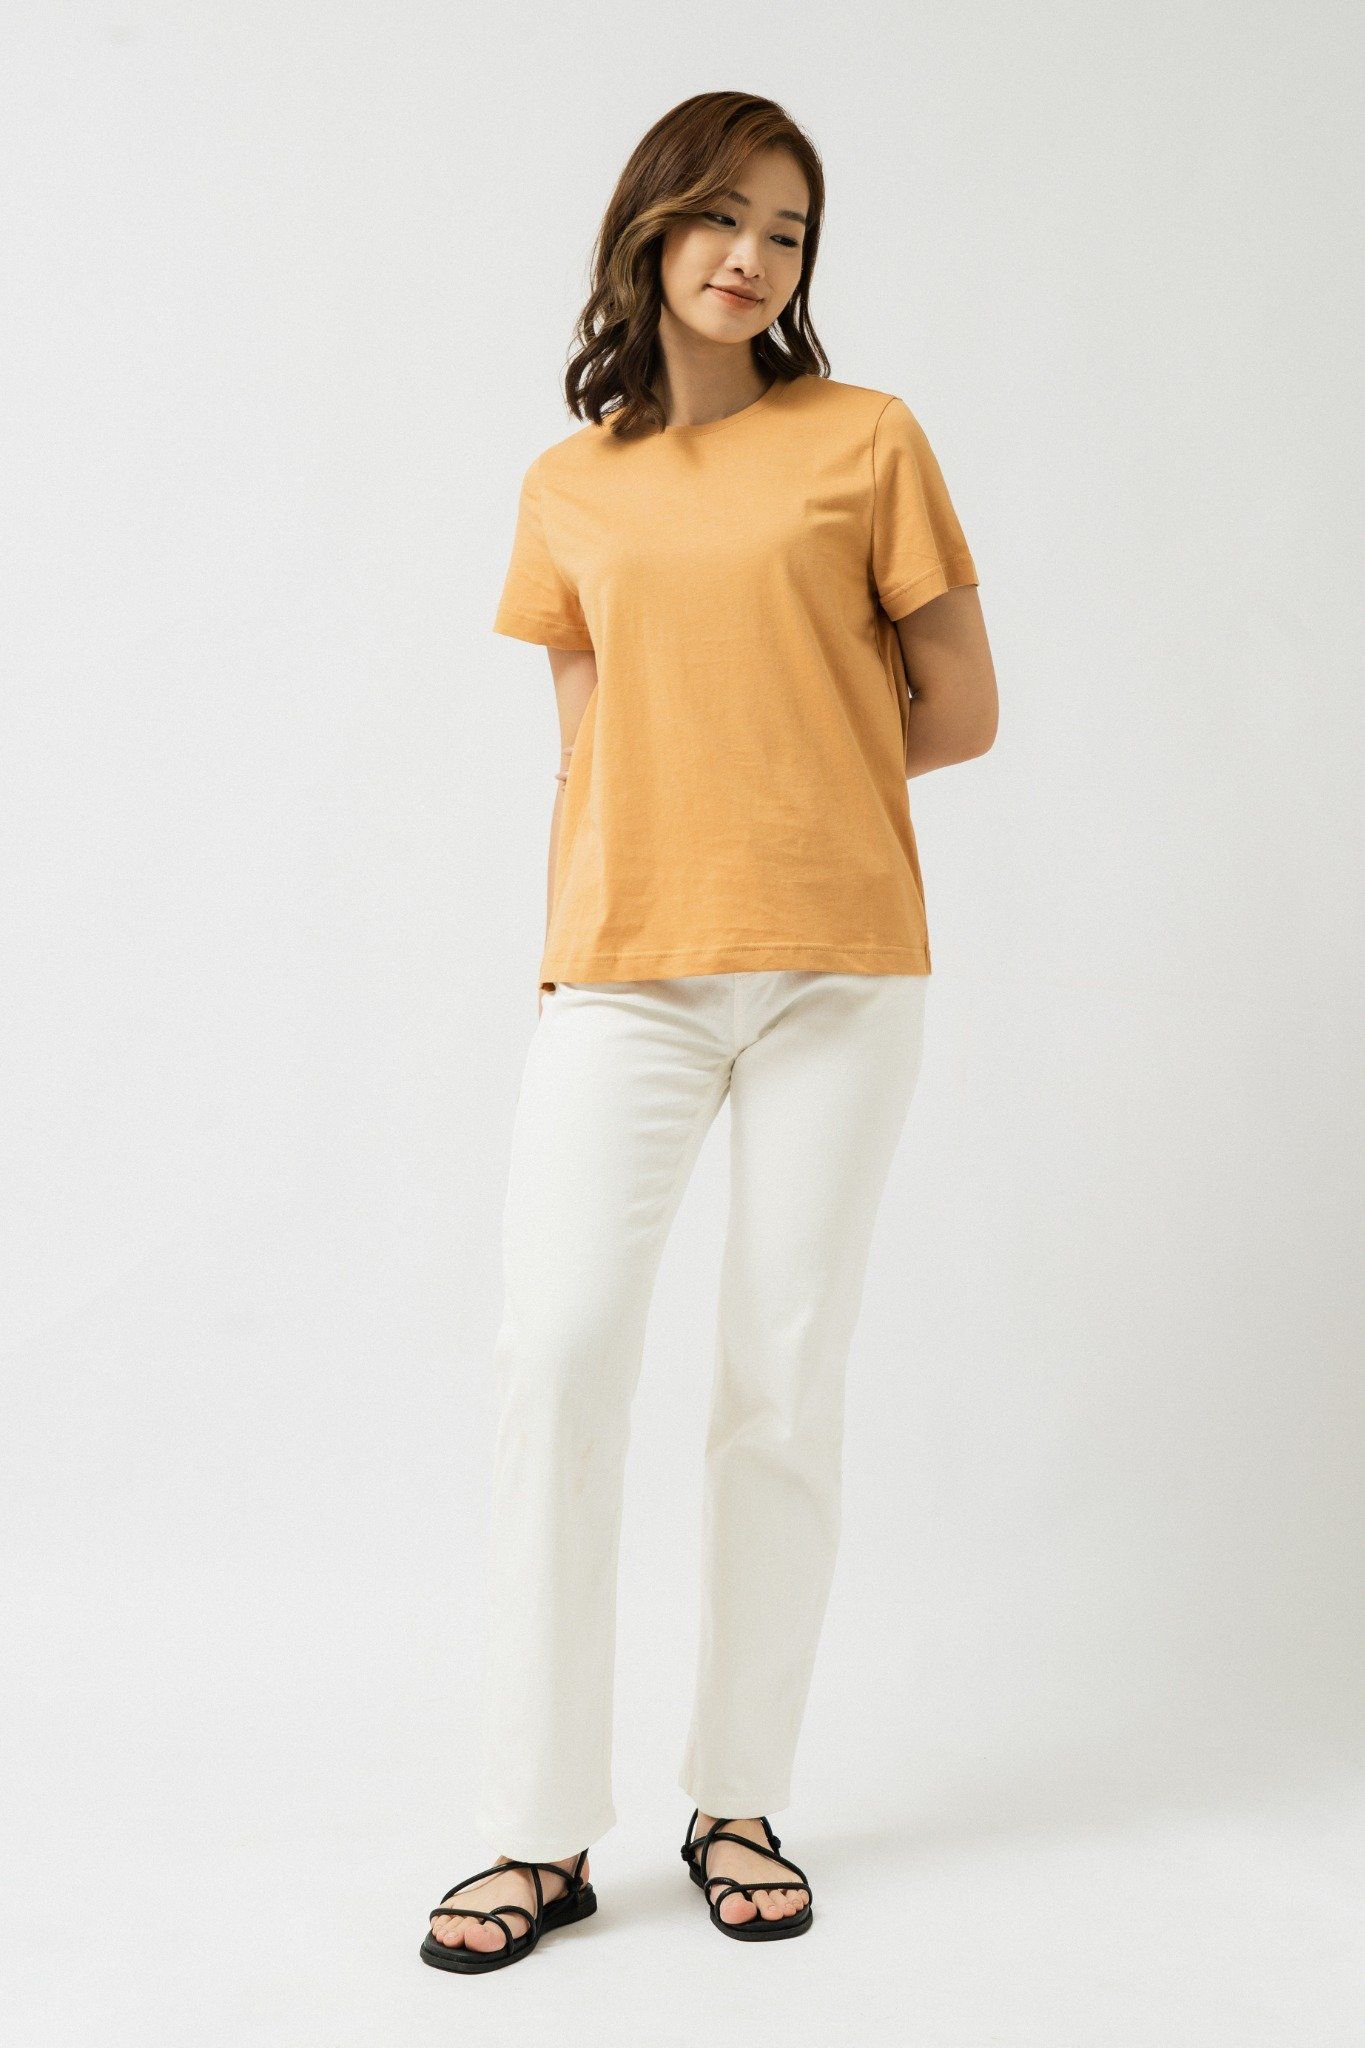  Áo phông nữ ngắn tay dáng vừa vải cotton hữu cơ 